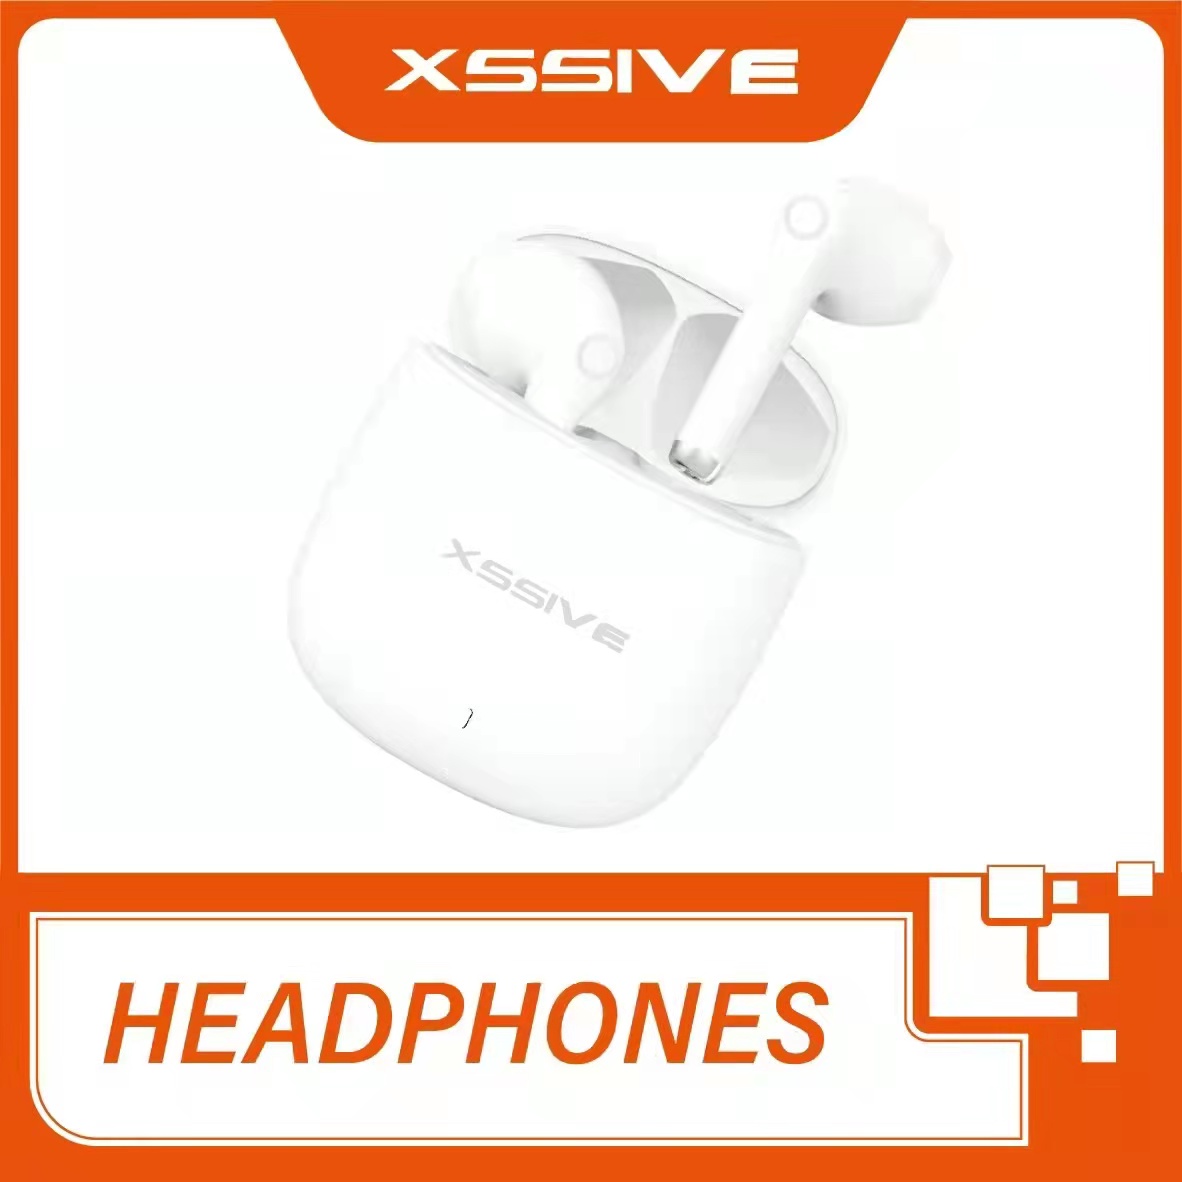 Xssive - Headphones